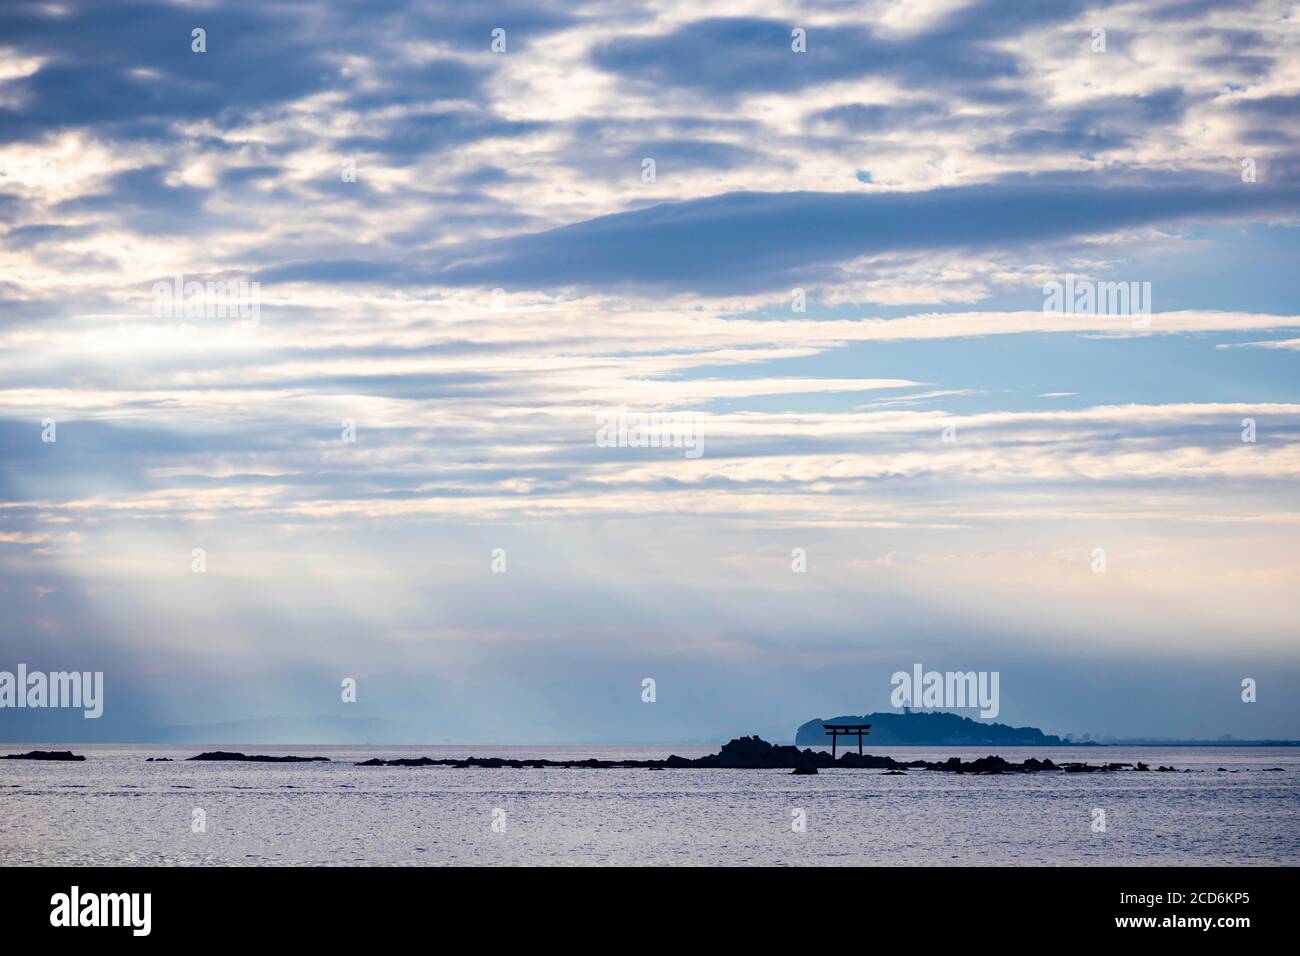 Rayo de luz sobre el mar con la vista de torii puerta y faro en la distancia Foto de stock